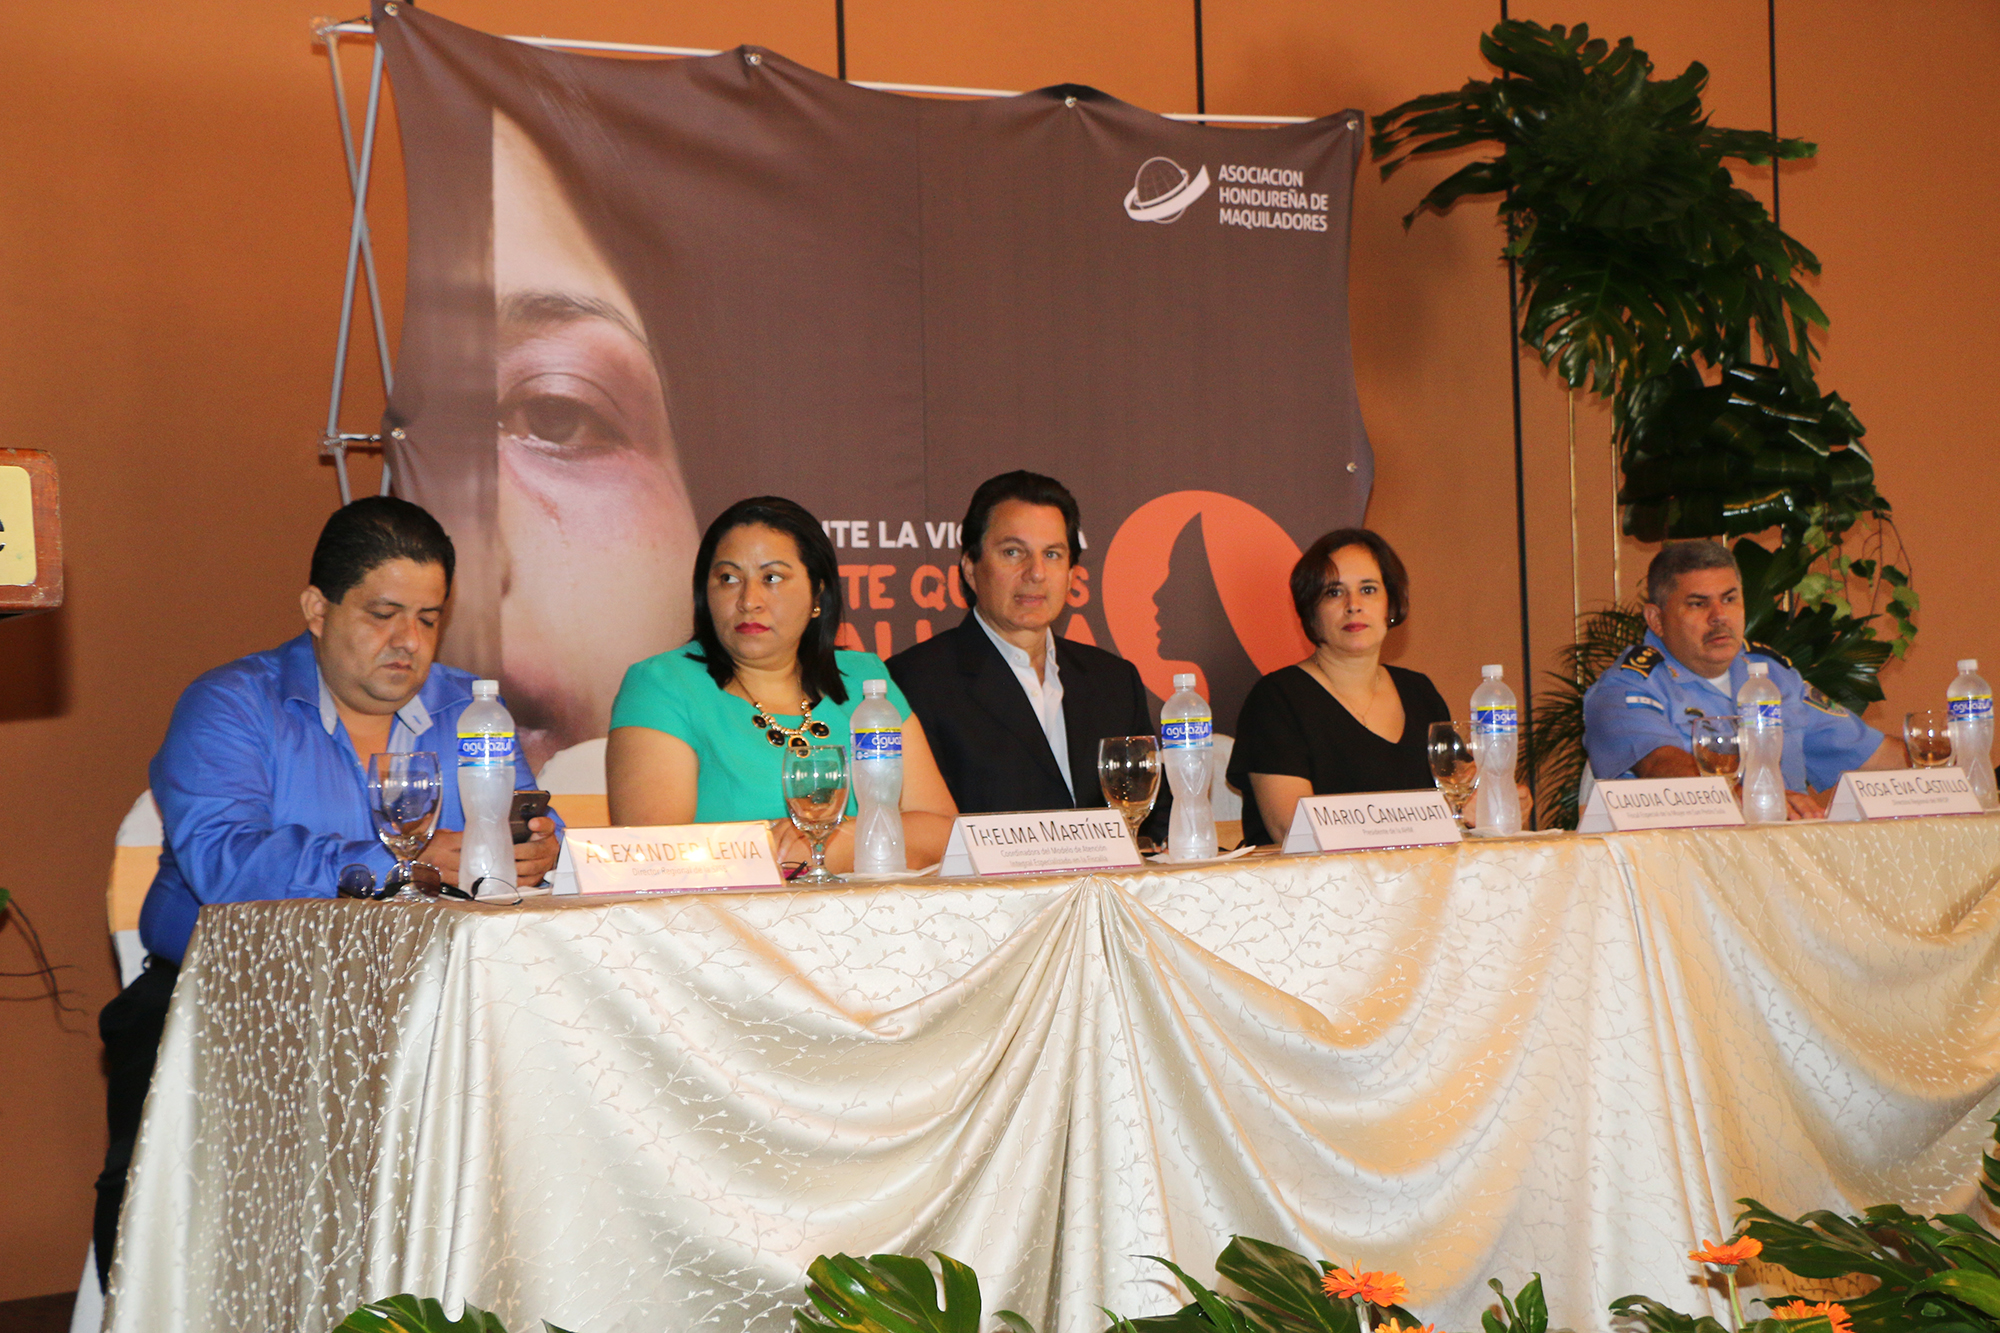 Asociación Hondureña de Maquiladores lanza campaña “Ante la violencia no te quedes callada. ¡Denuncia!”